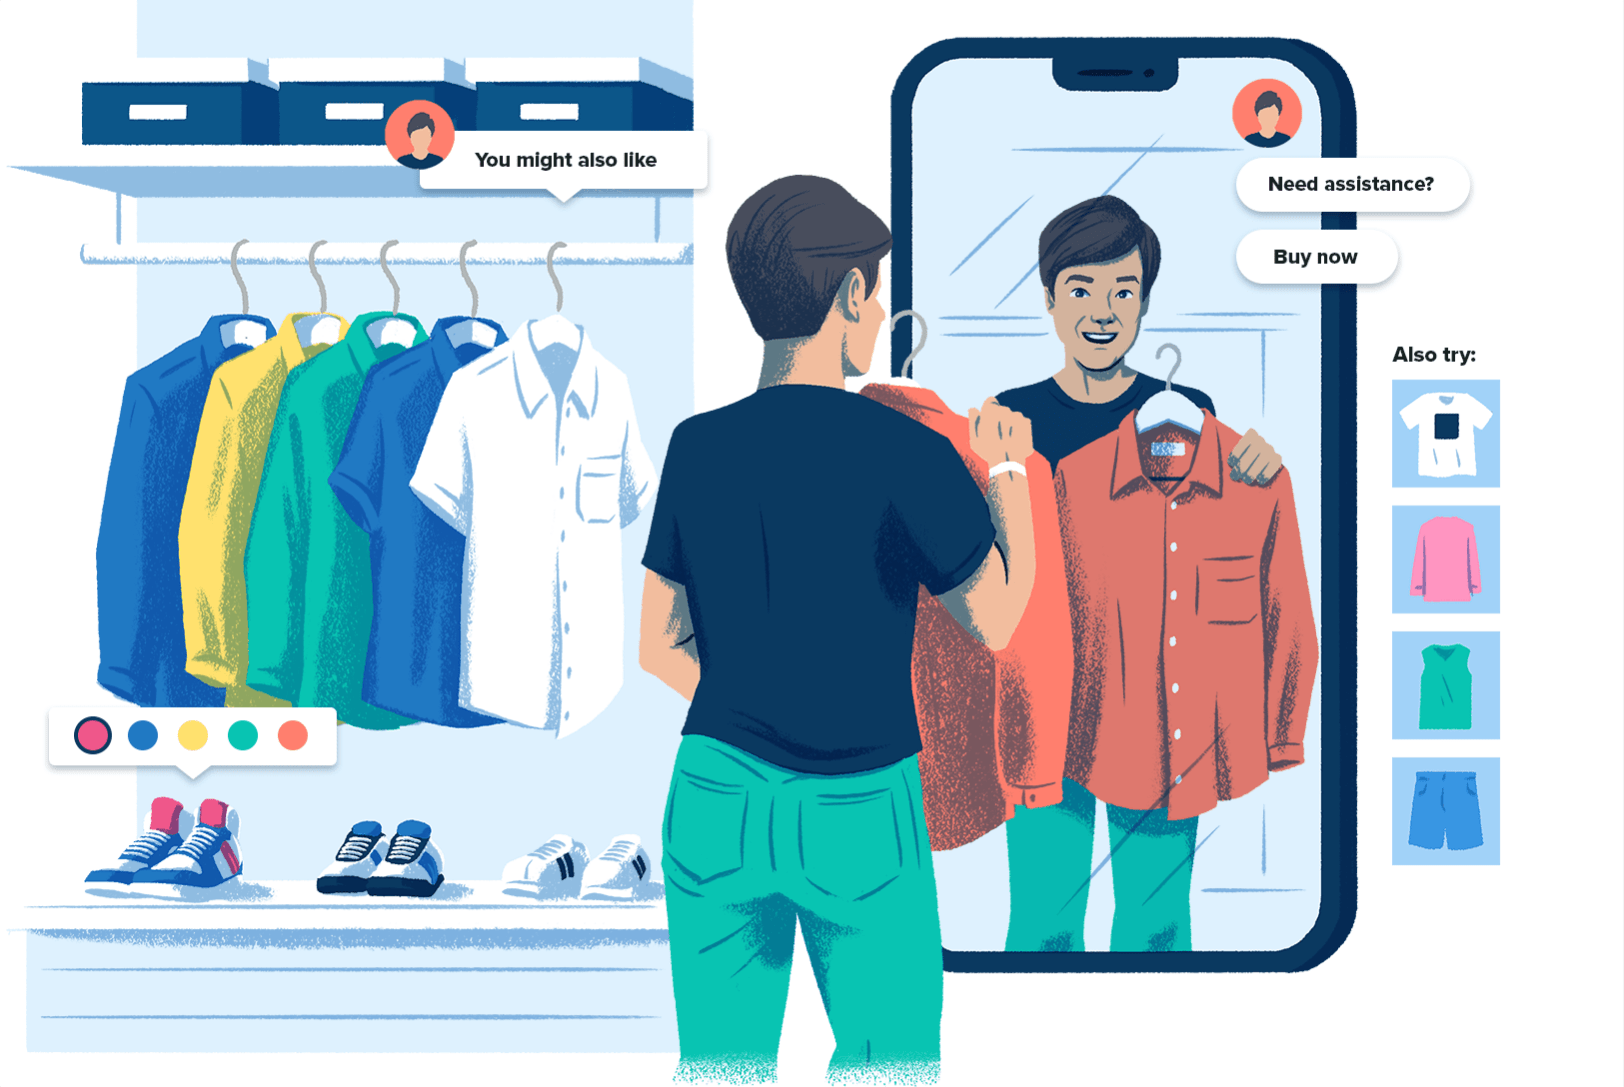 Ilustración de un comprador en un escaparate con un espejo en forma de teléfono celular y botones de compra en línea sobre los productos, lo que representa la experiencia similar a la de una tienda que puedes tener al comprar en las redes sociales.